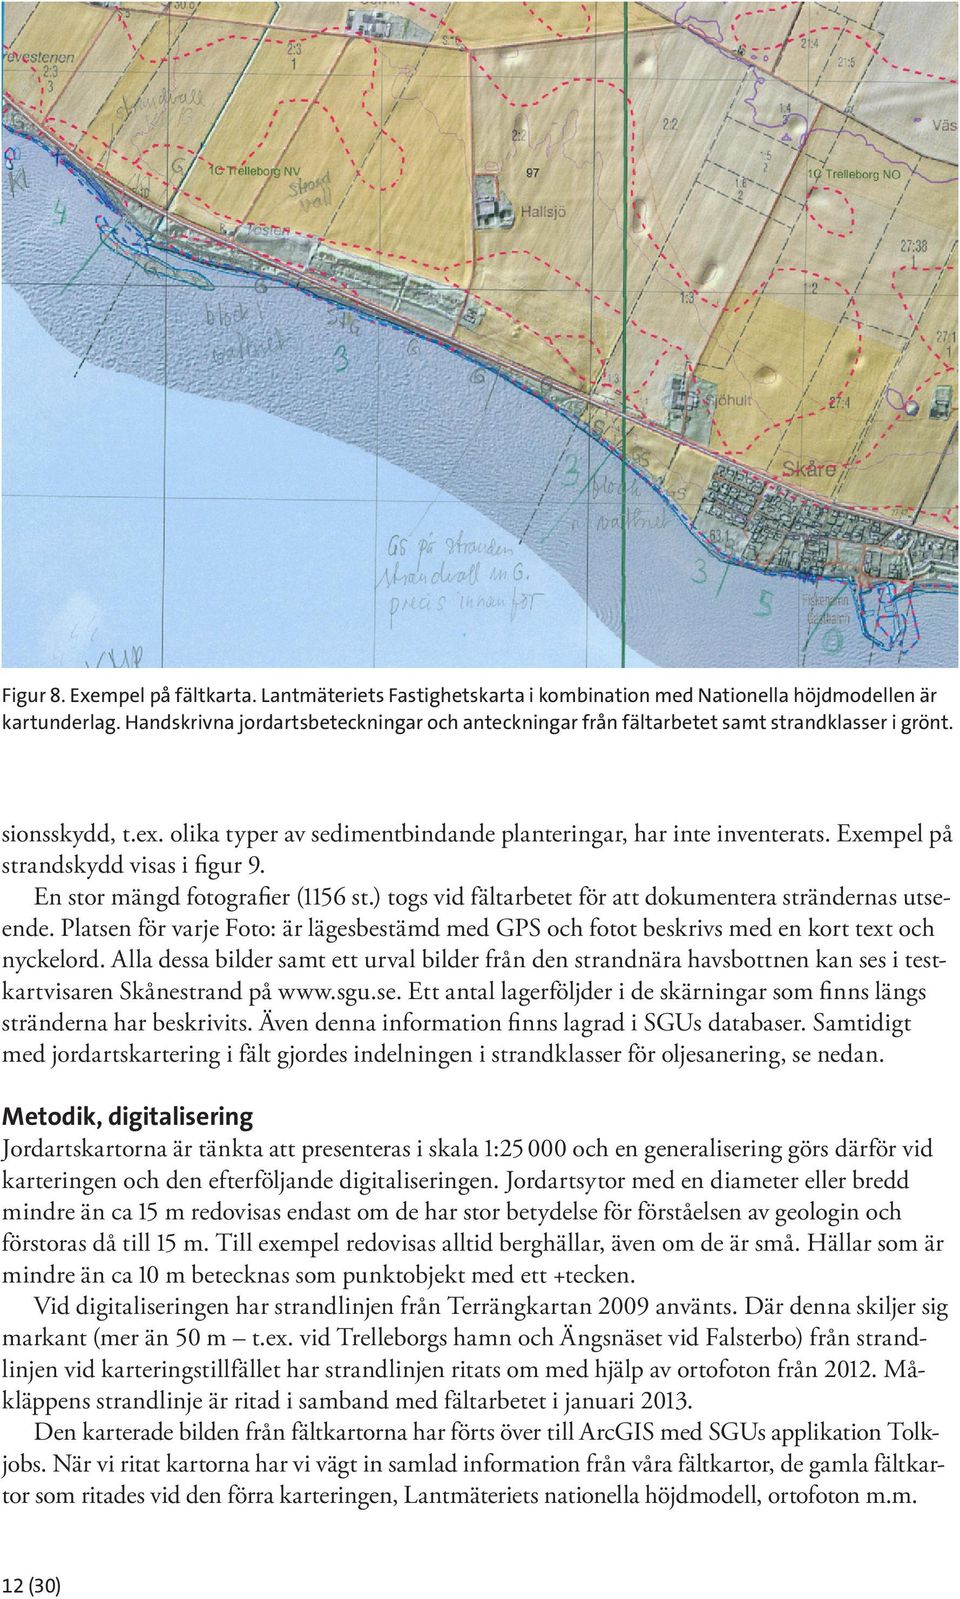 Exempel på strandskydd visas i figur 9. En stor mängd fotografier (1156 st.) togs vid fältarbetet för att dokumentera strändernas utseende.